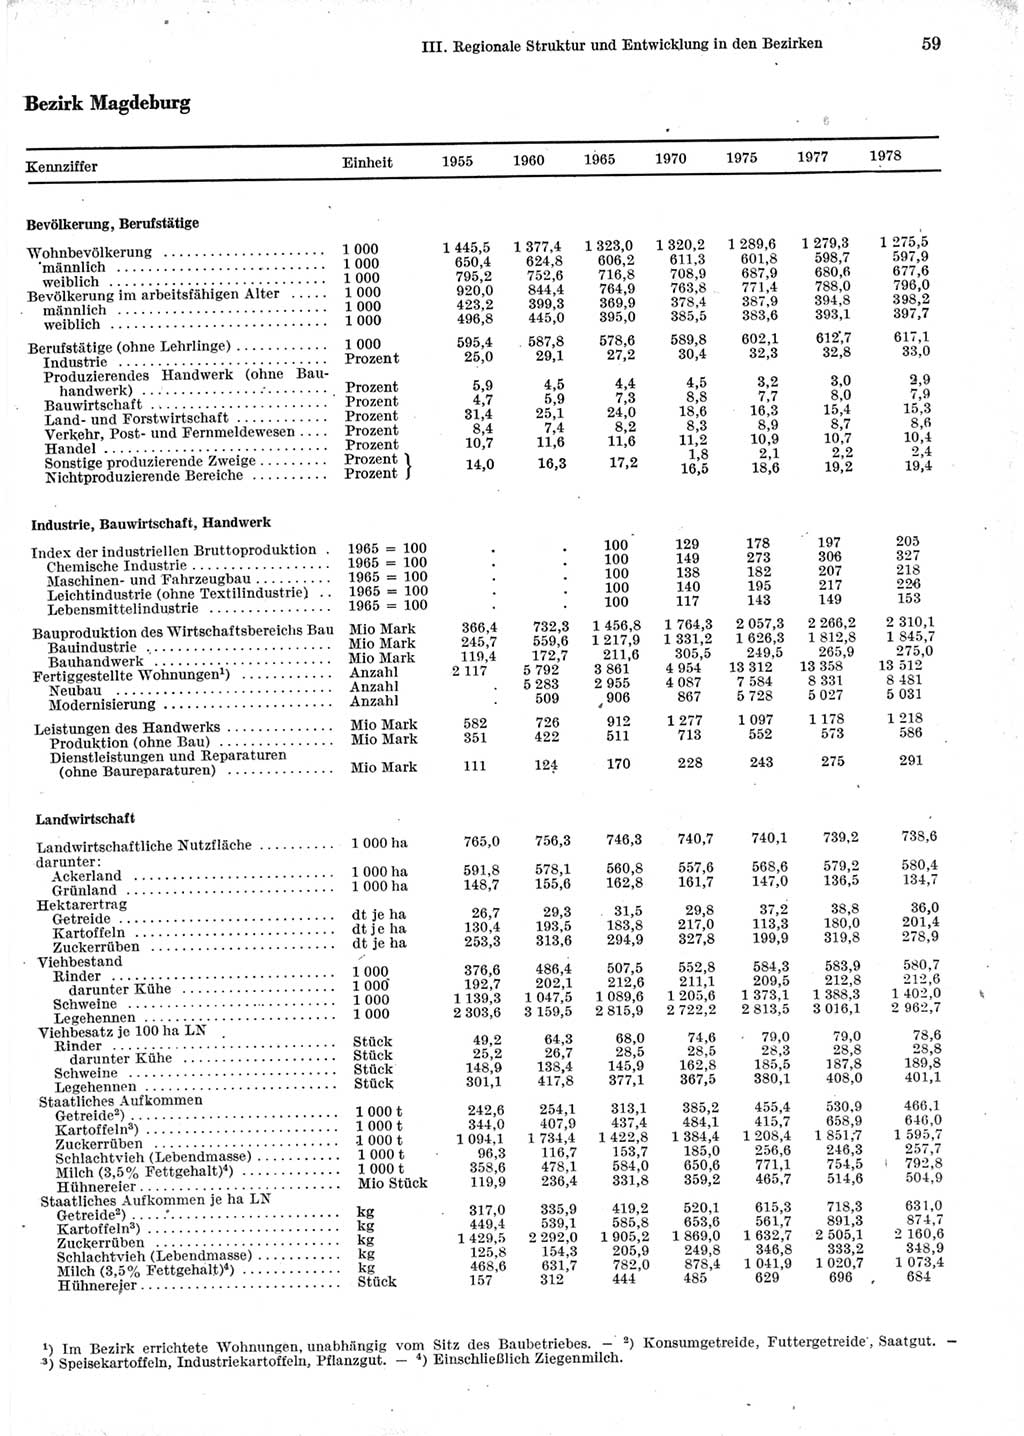 Statistisches Jahrbuch der Deutschen Demokratischen Republik (DDR) 1979, Seite 59 (Stat. Jb. DDR 1979, S. 59)